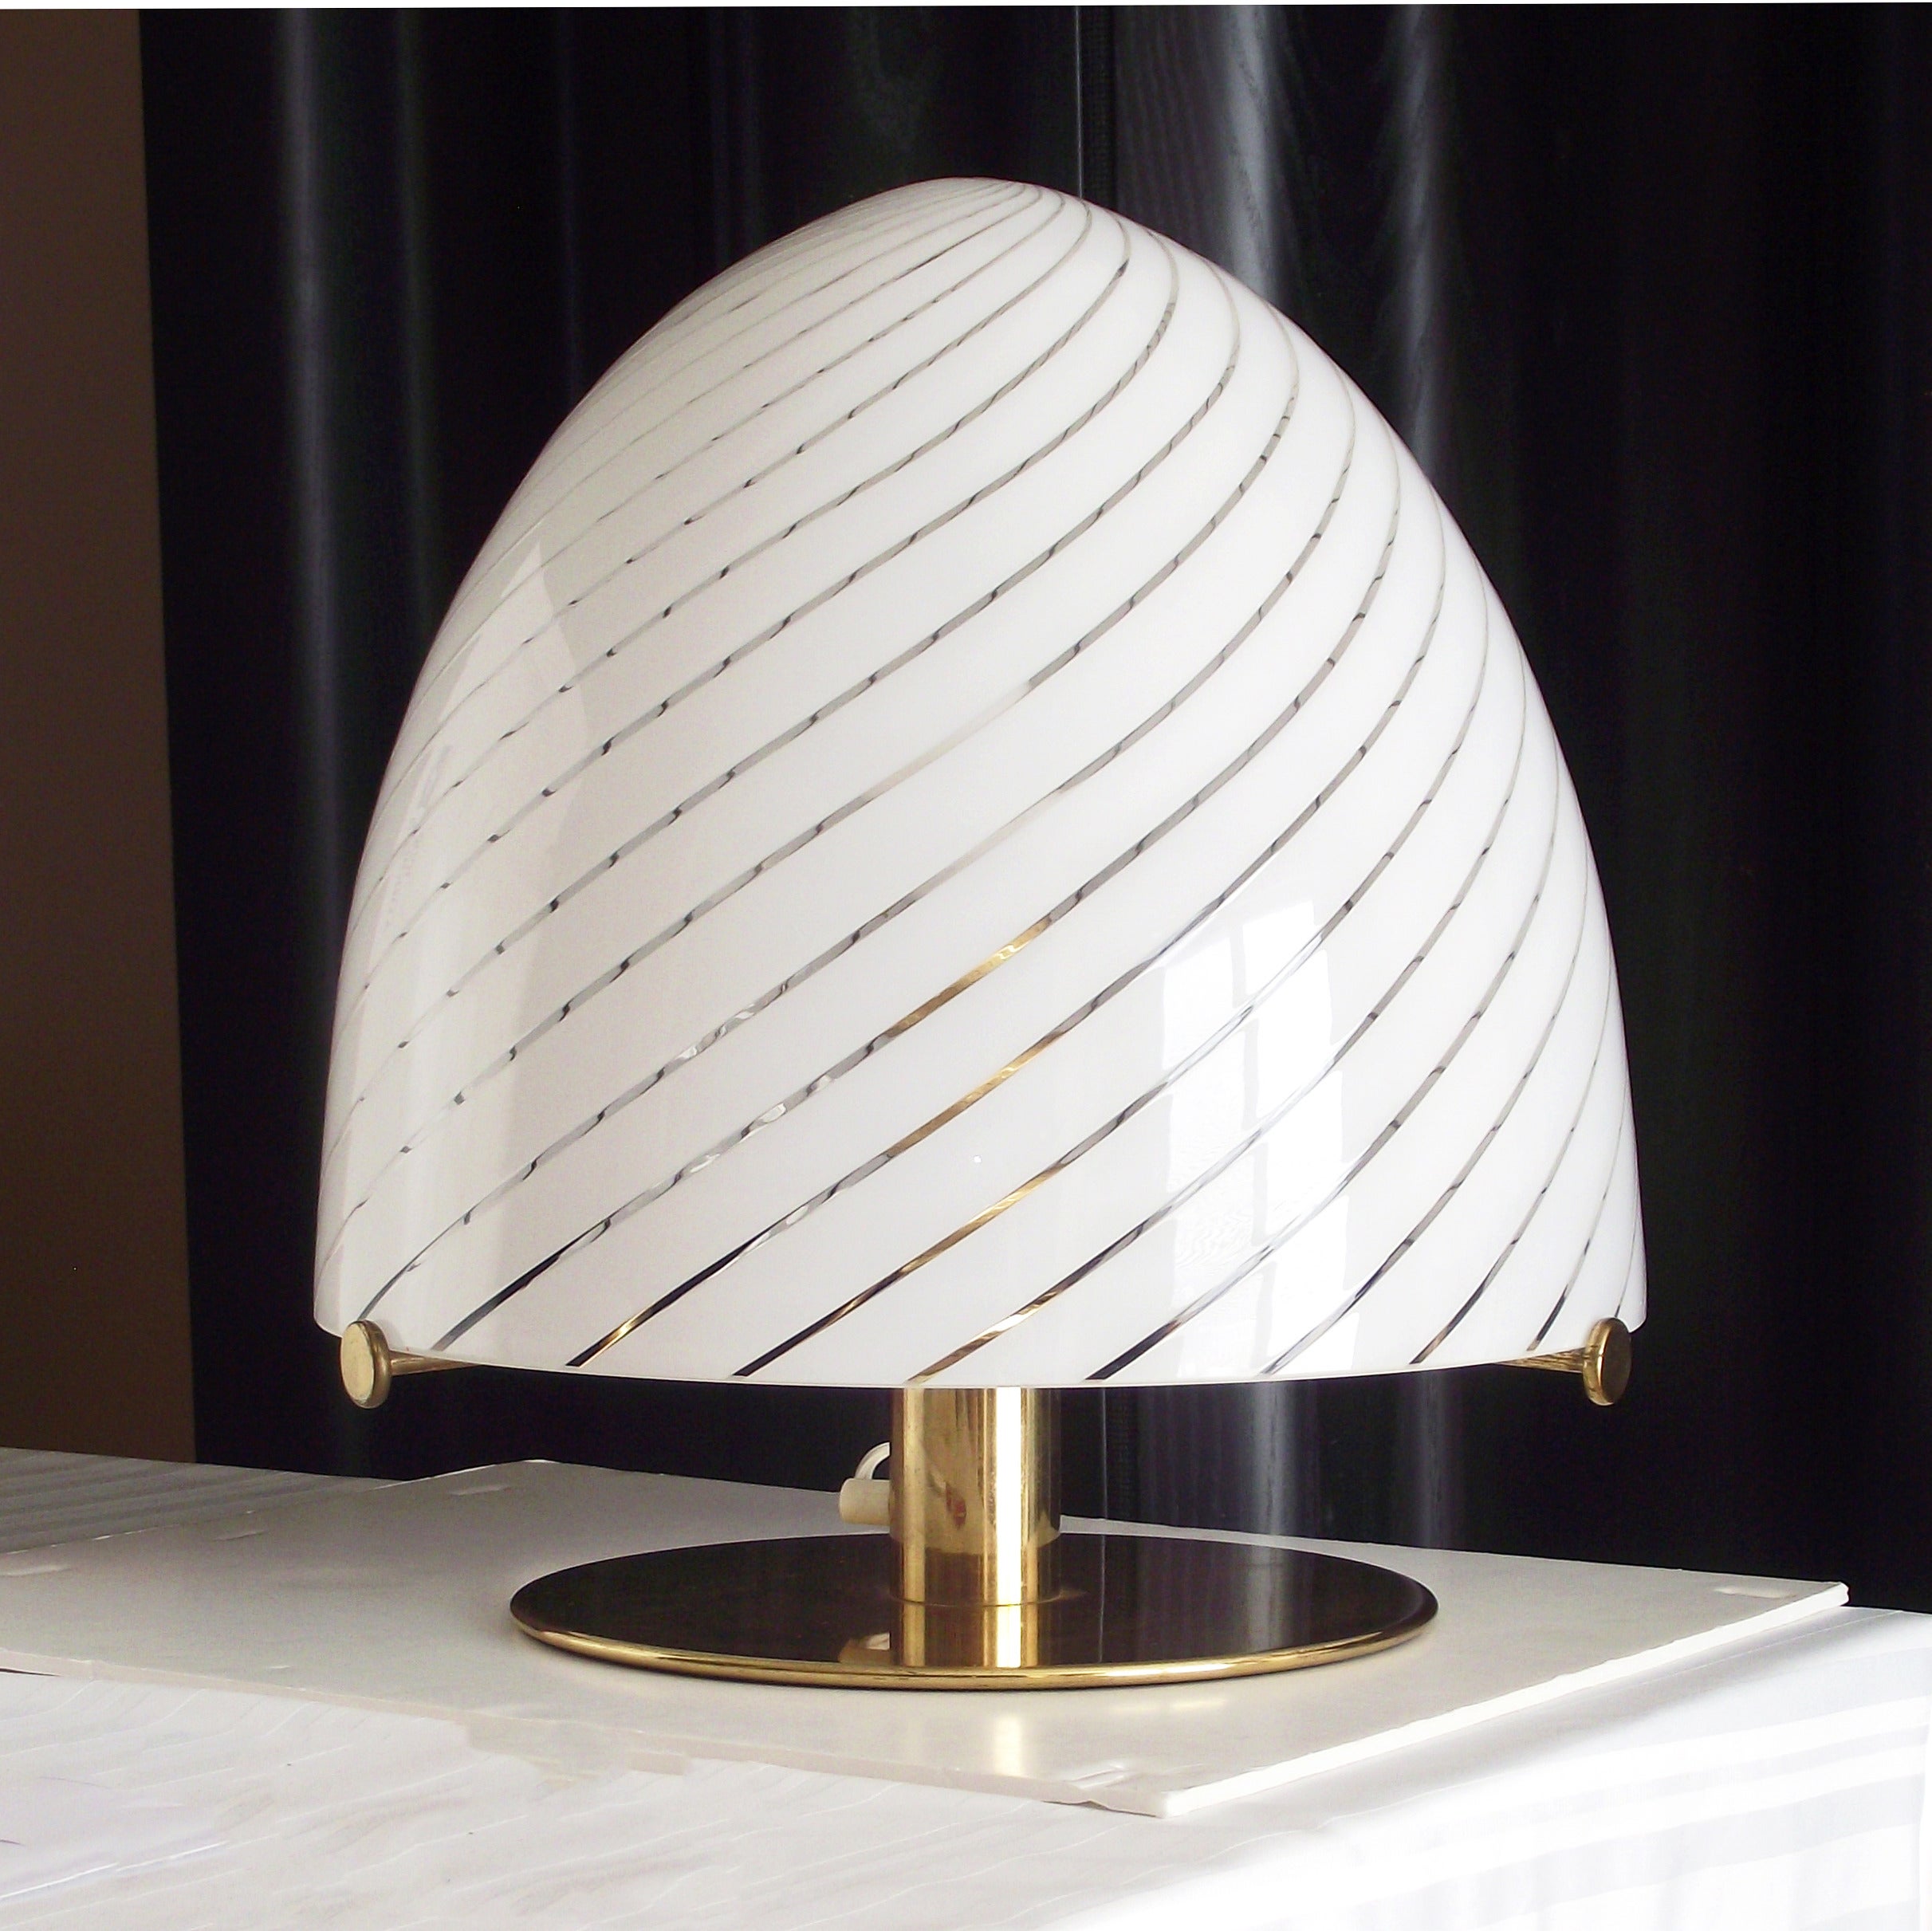 Unusual 1960s Murano Glass "Egg" Lamp